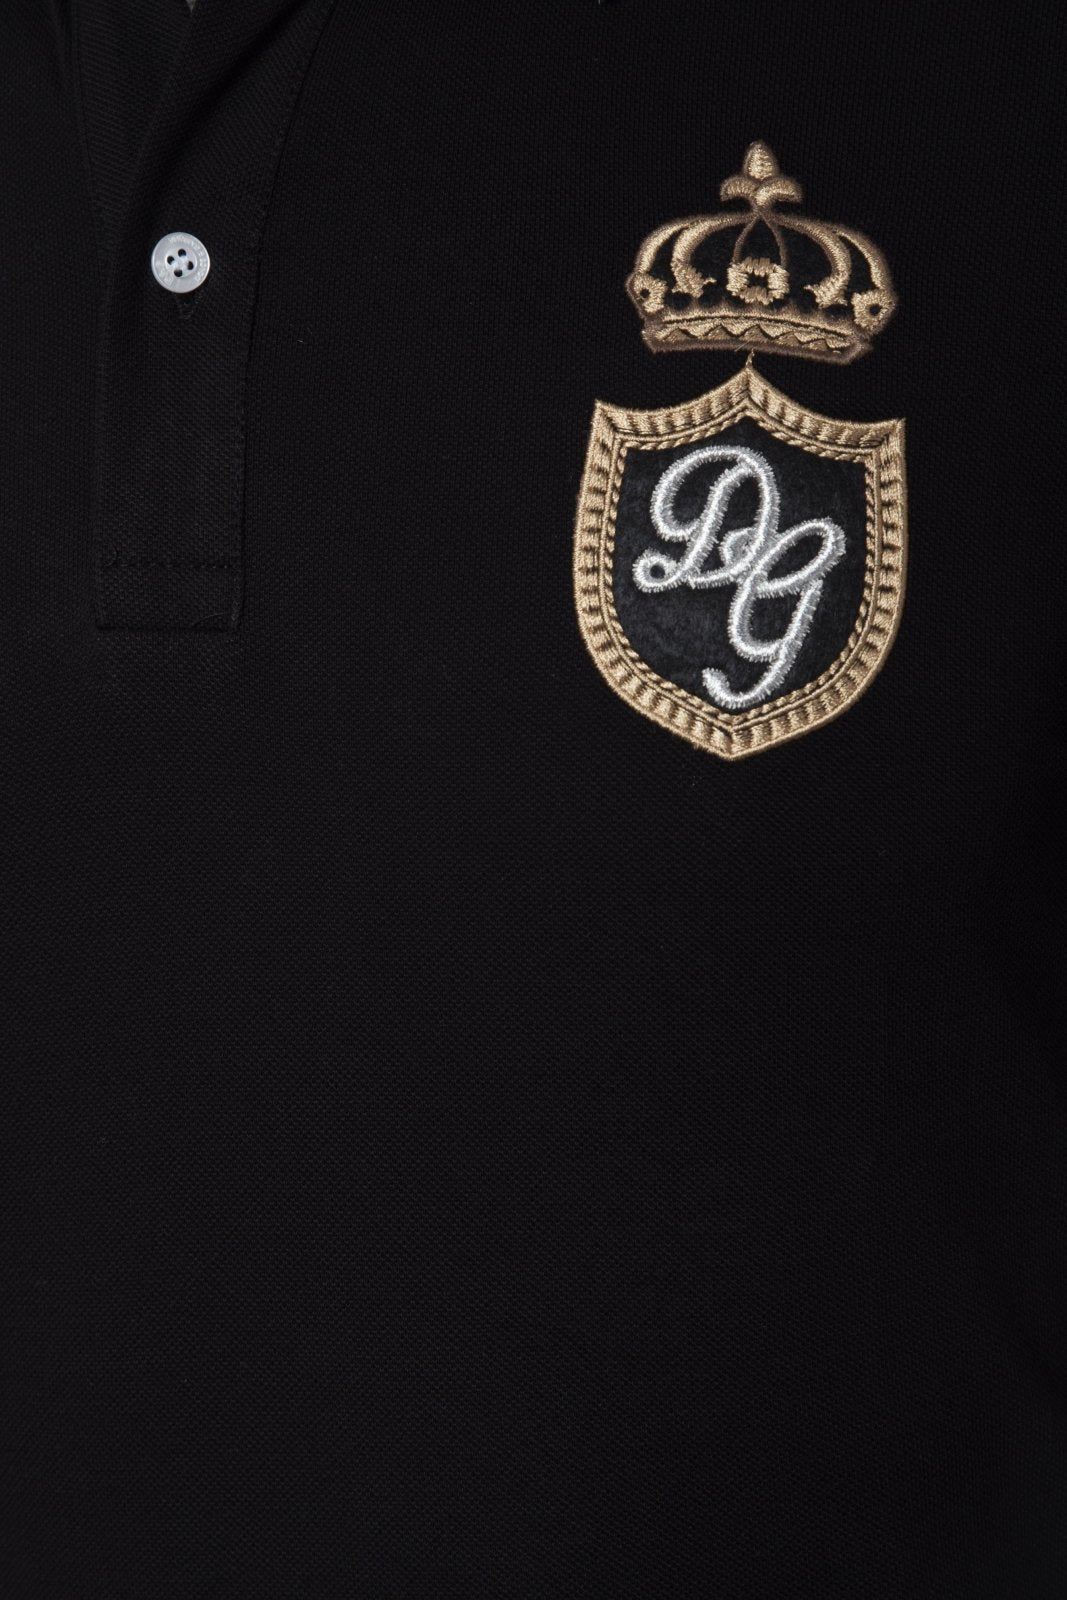 Dolce&Gabbana Polo Shirt - Giltenergy